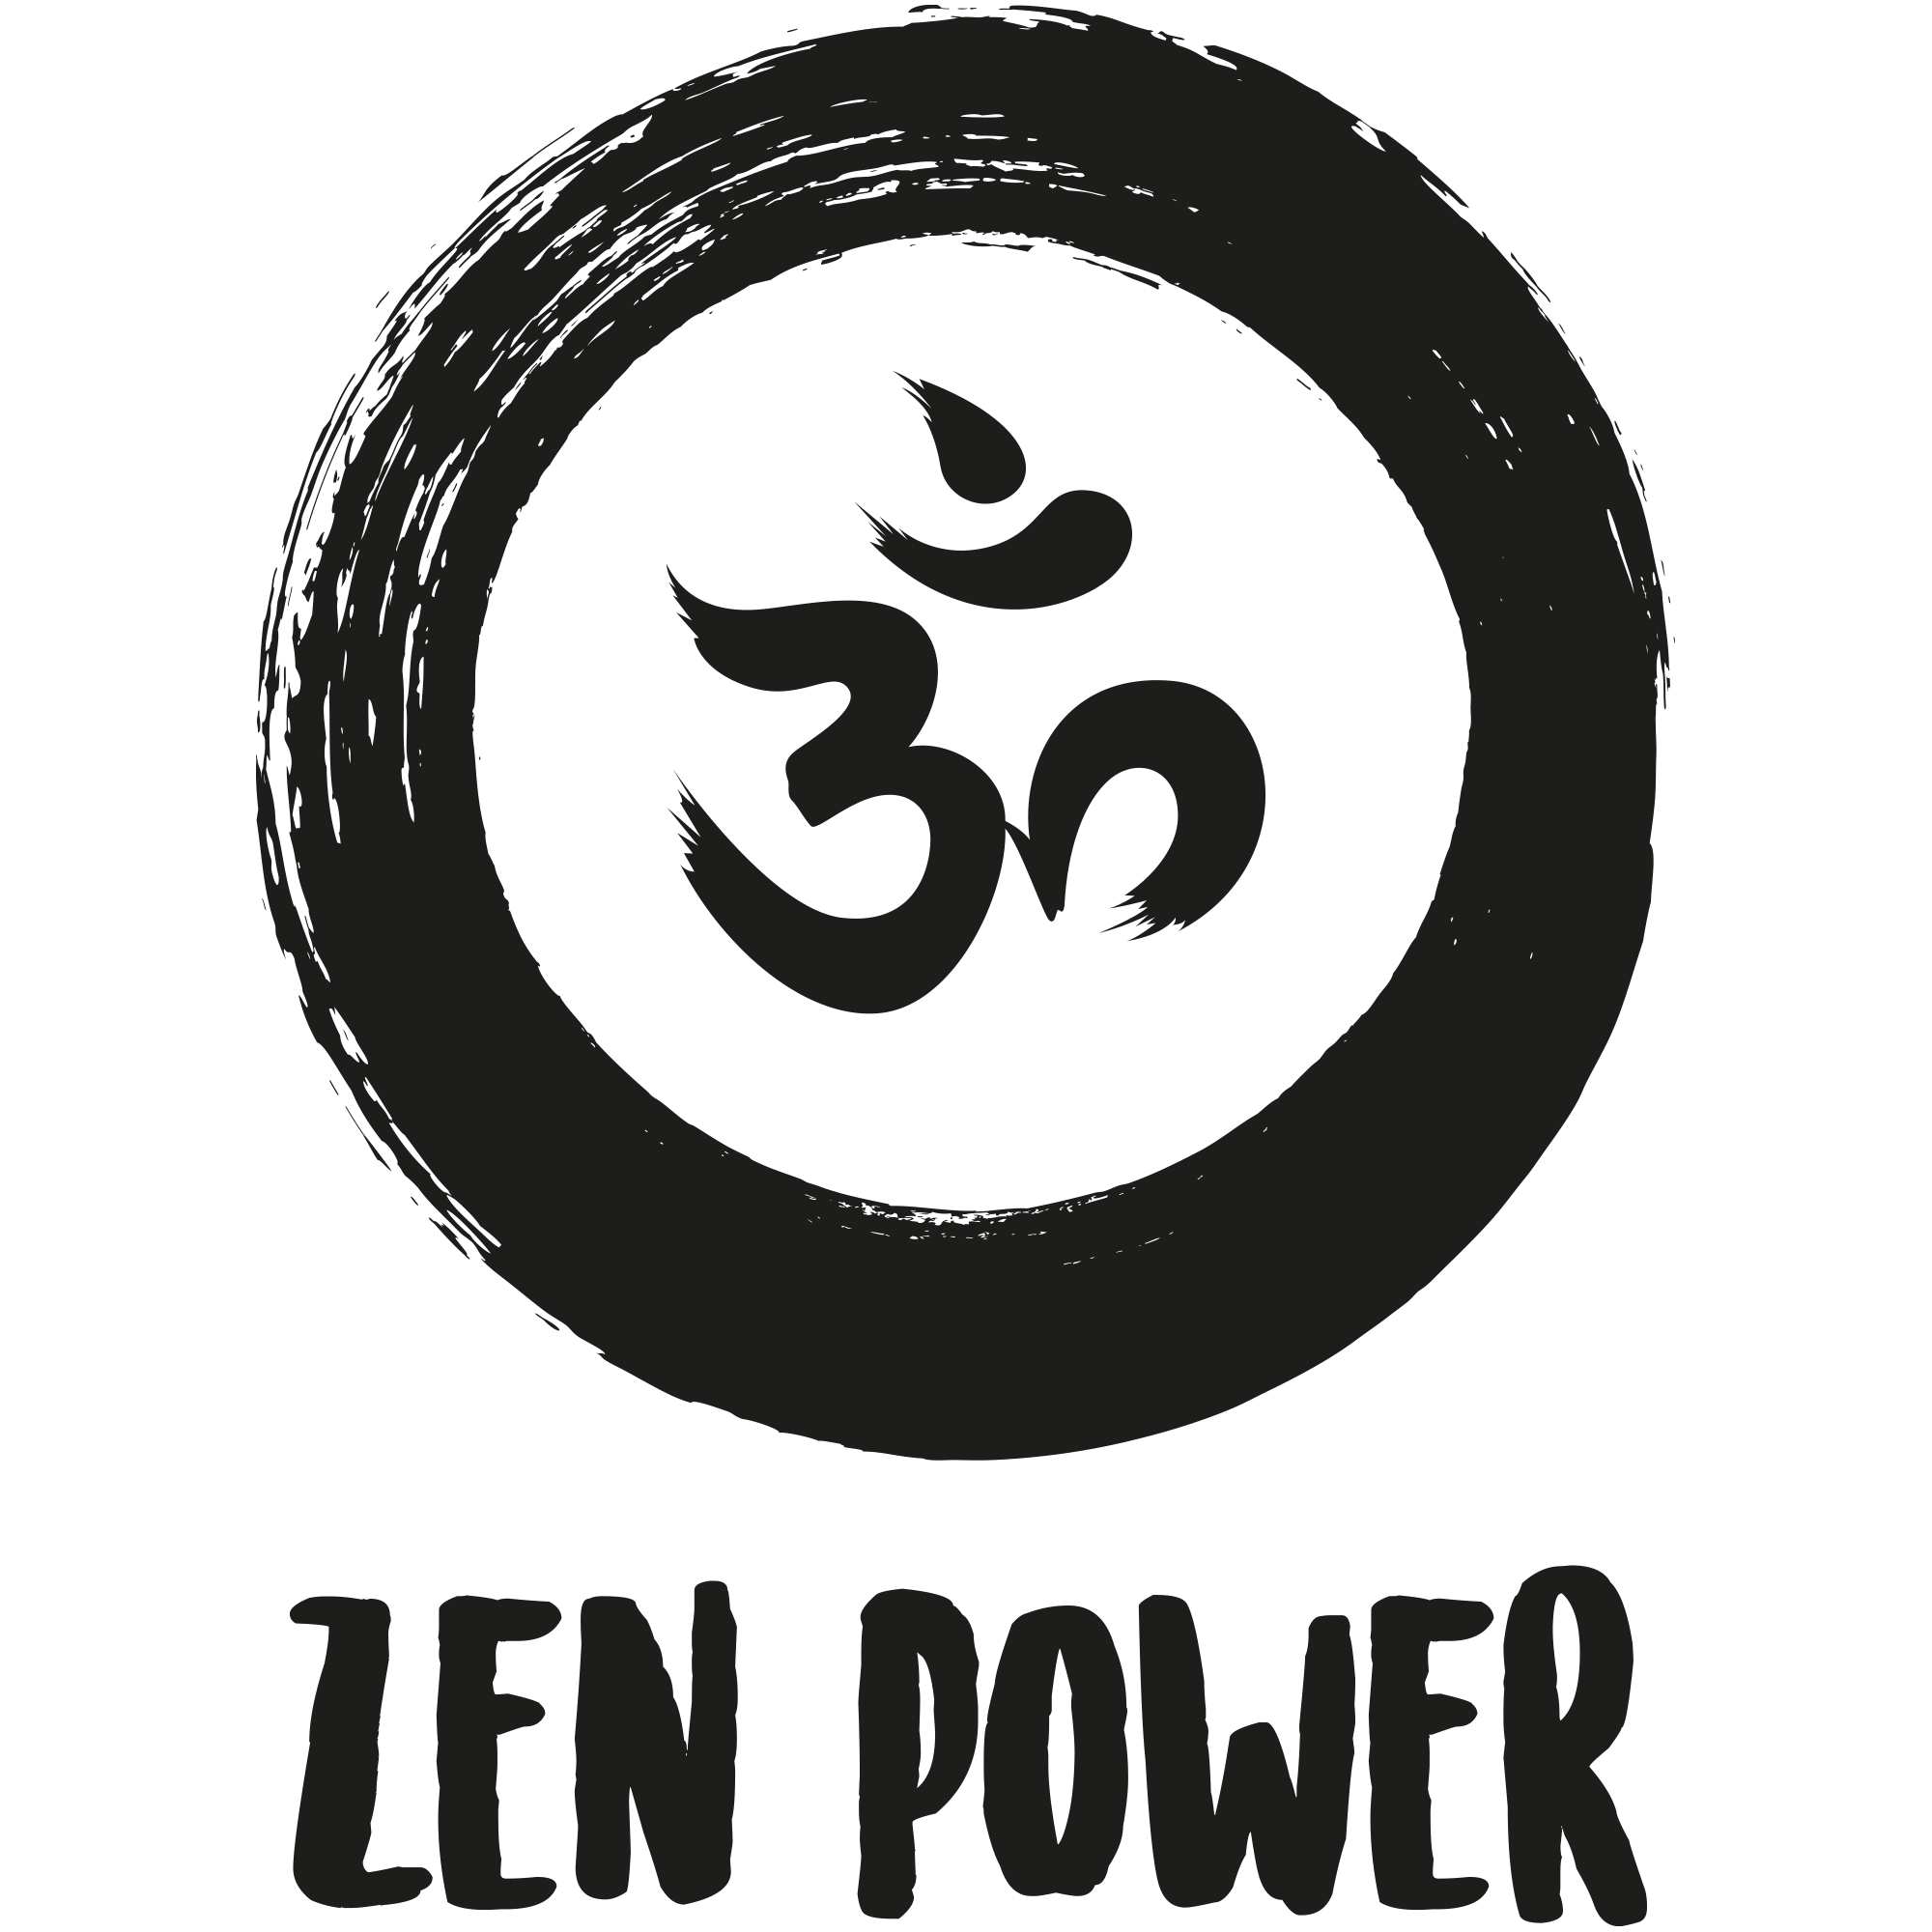 Weitere Artikel von ZenPower